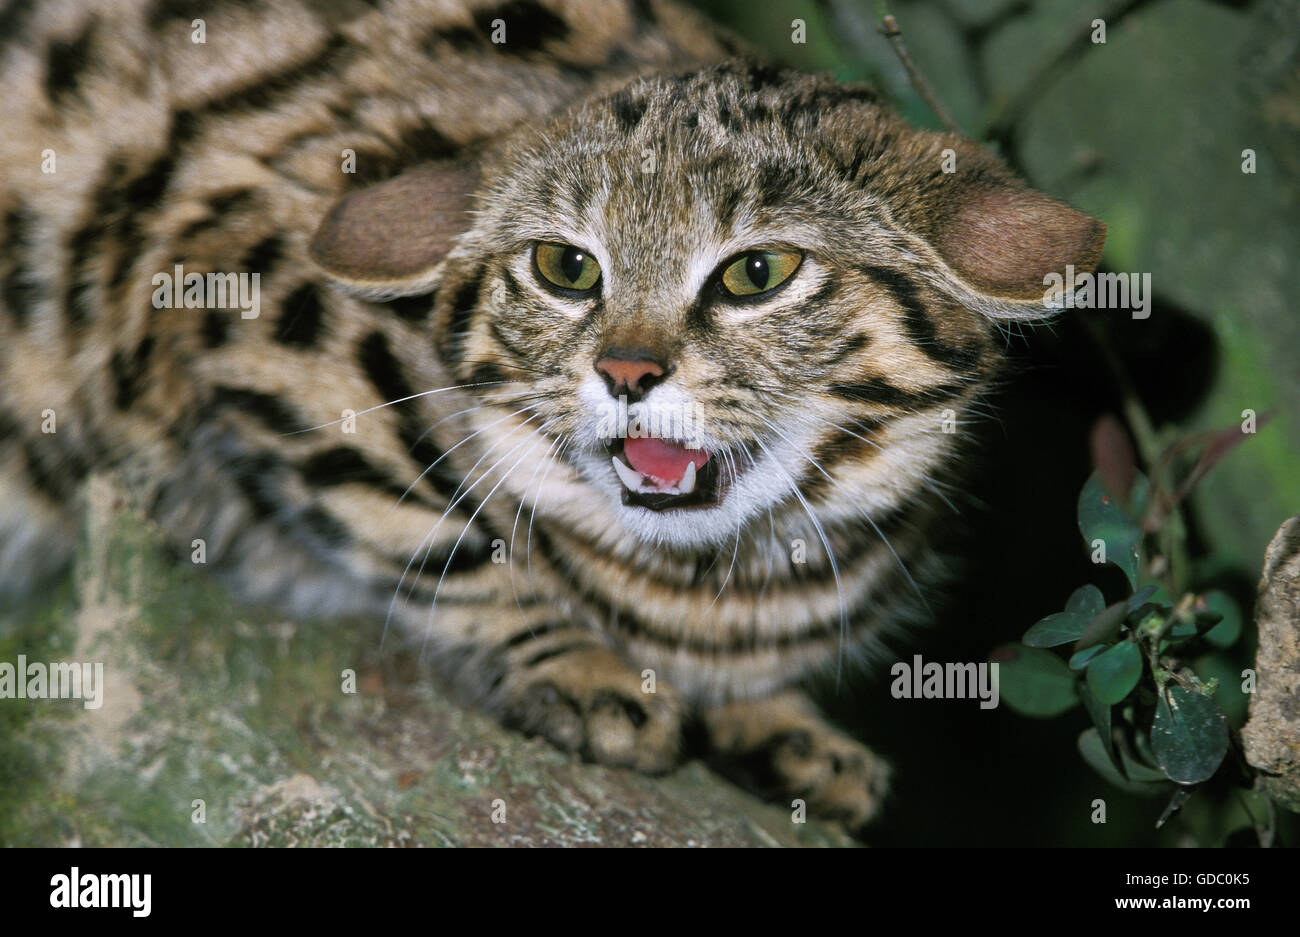 Patas negras felis nigripes, gato adulto, gruñendo, postura defensiva Foto de stock